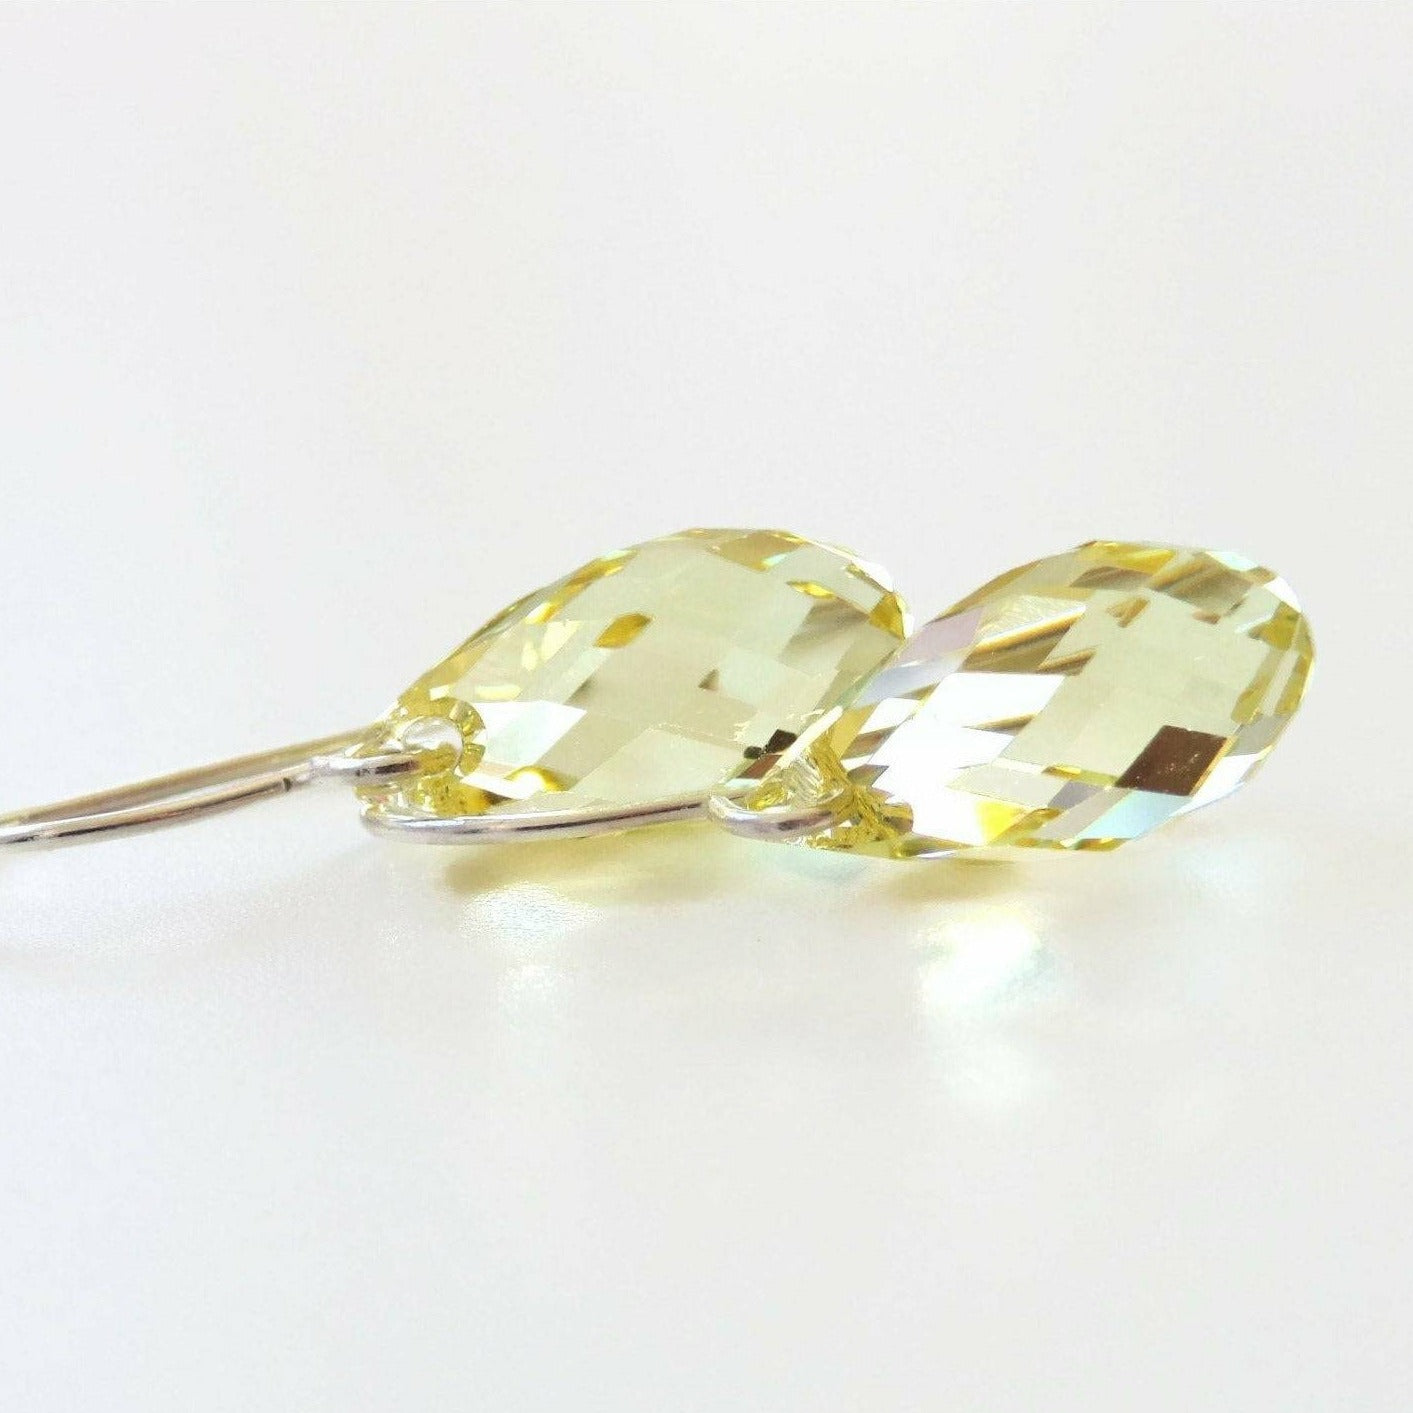 Yellow crystal teardrop earrings